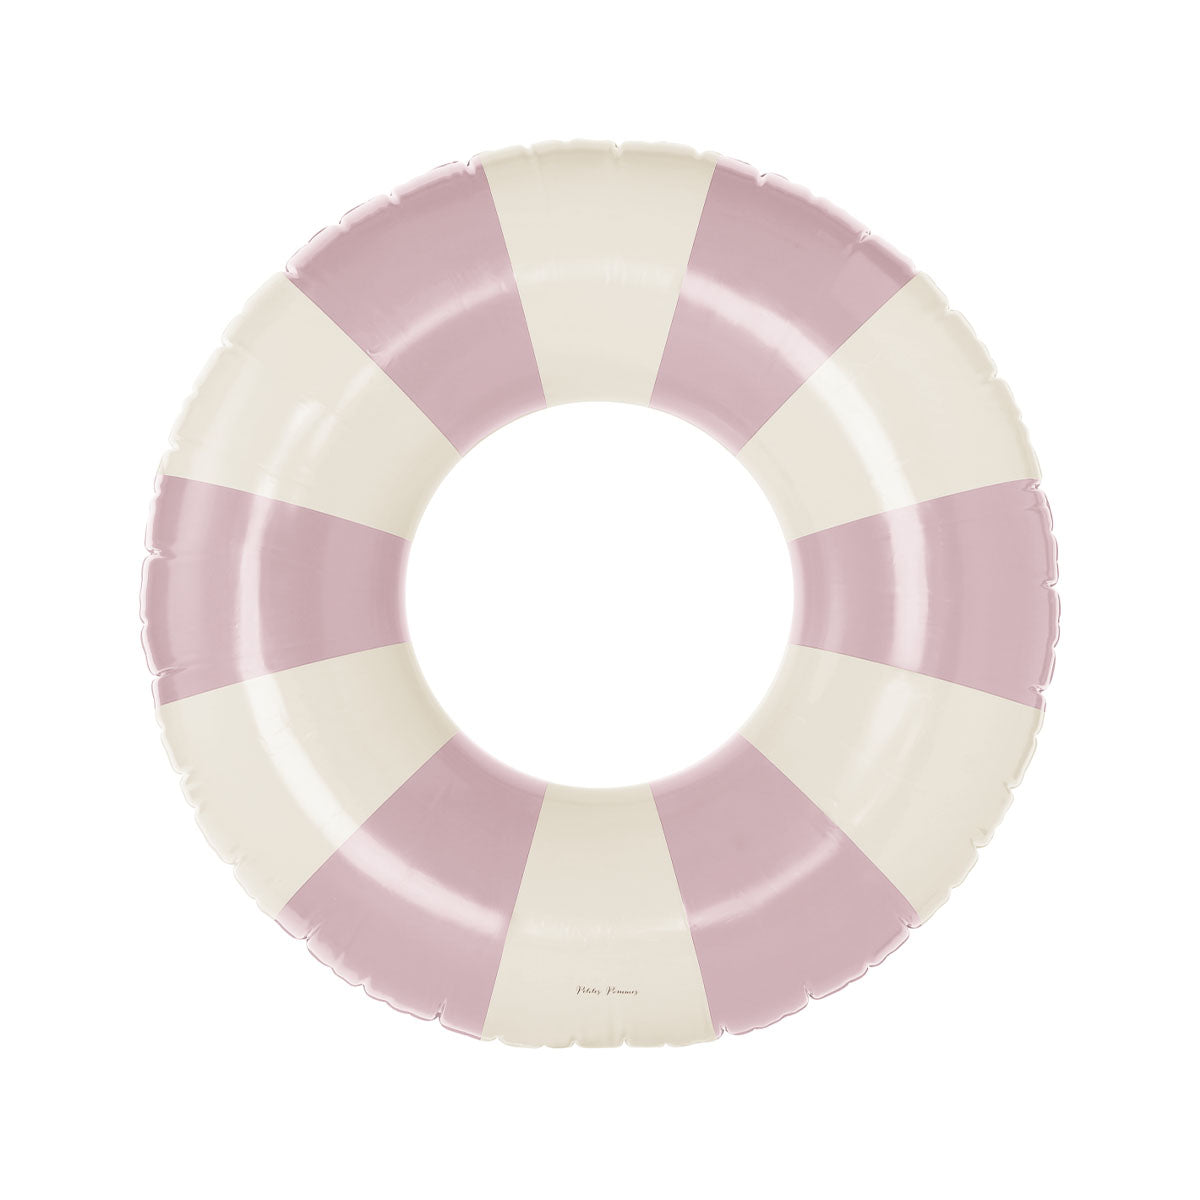 De Petites Pommes Celine zwemband in de kleur french rose is een opblaasbare zwemband met een diameter van 120cm. Met deze zwemring kan jouw kindje heerlijk relaxen en zwemmen in het zwembad of de zee. VanZus.